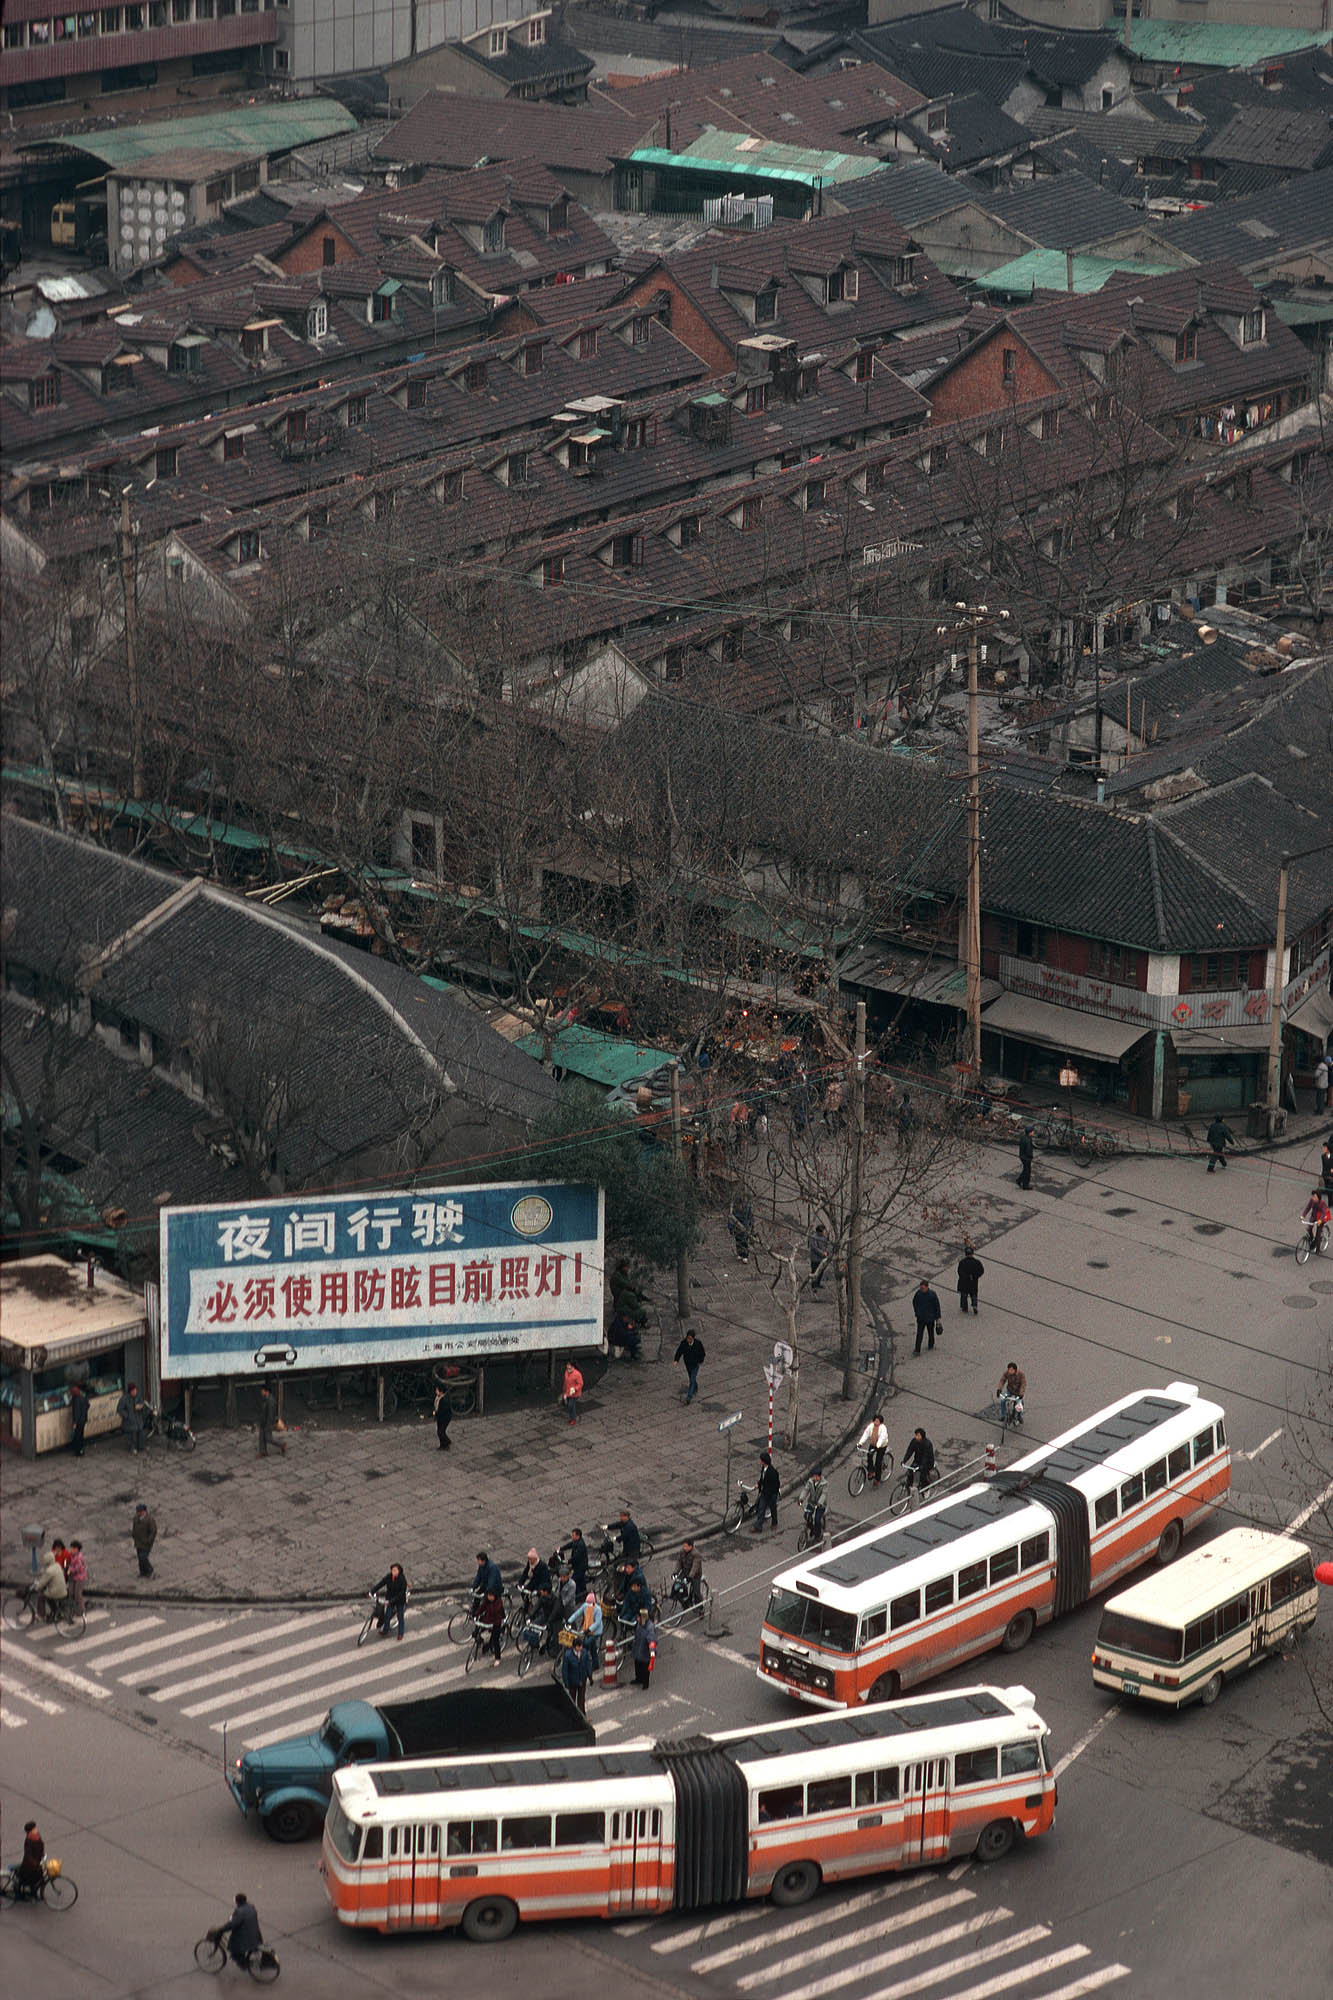 bill-hocker-old-shanghai-china-1988